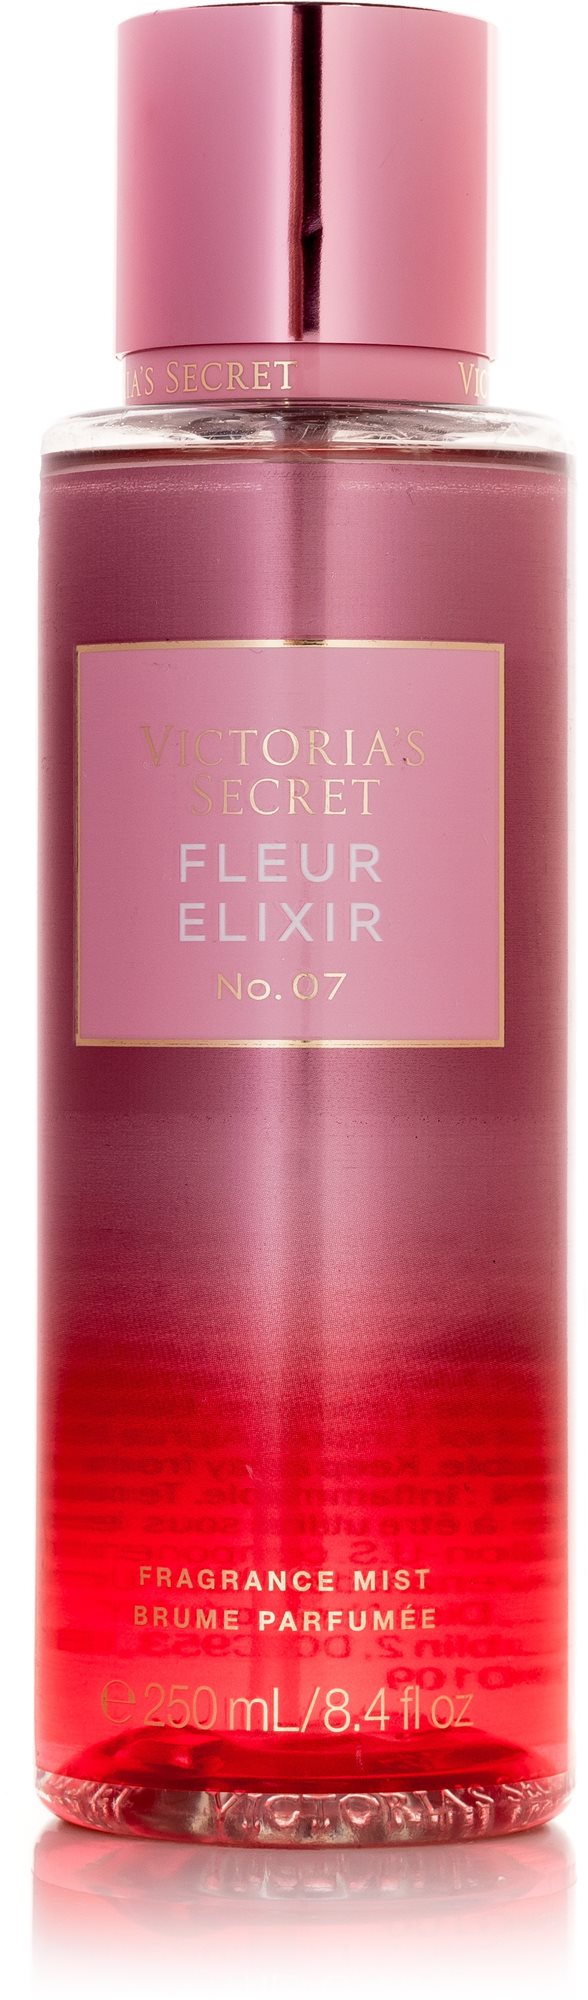 VICTORIA'S SECRET Fleur Elixír No. 7, 250 ml